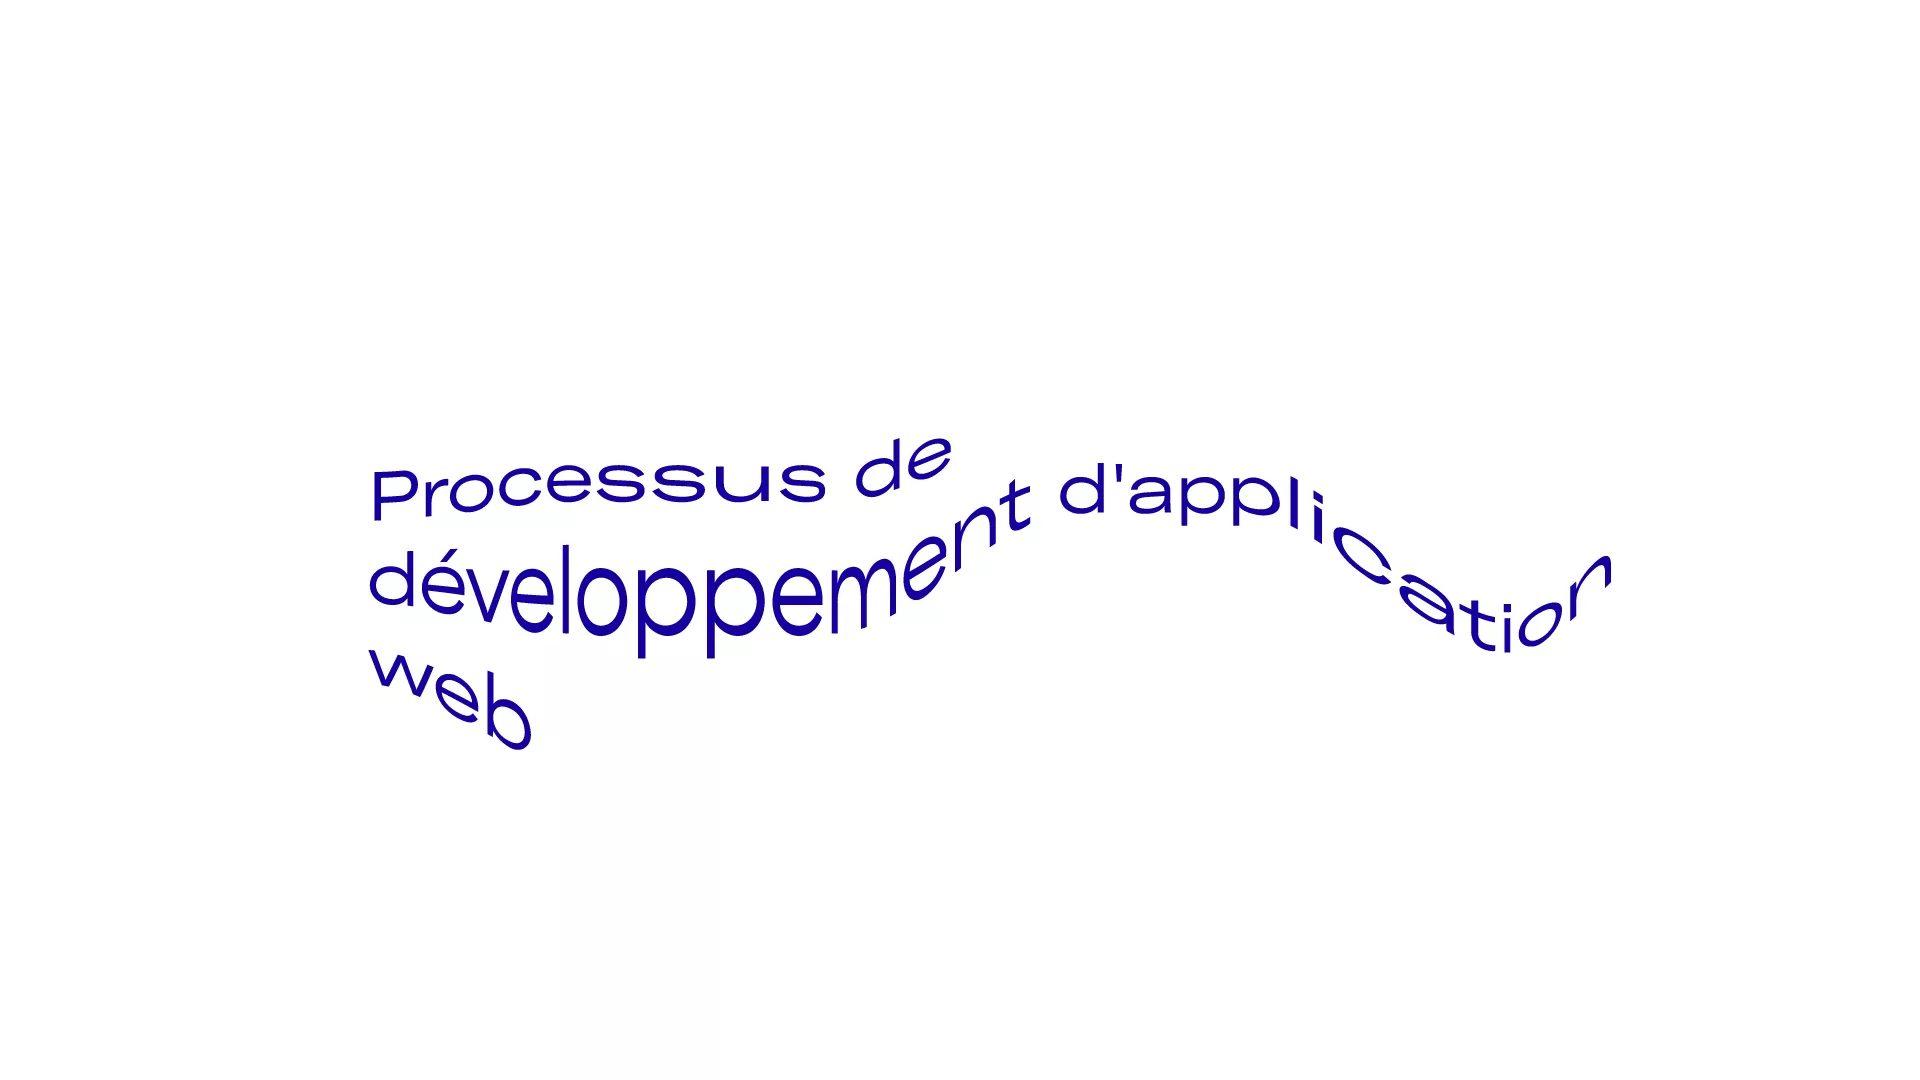 Processus de développement d'application web